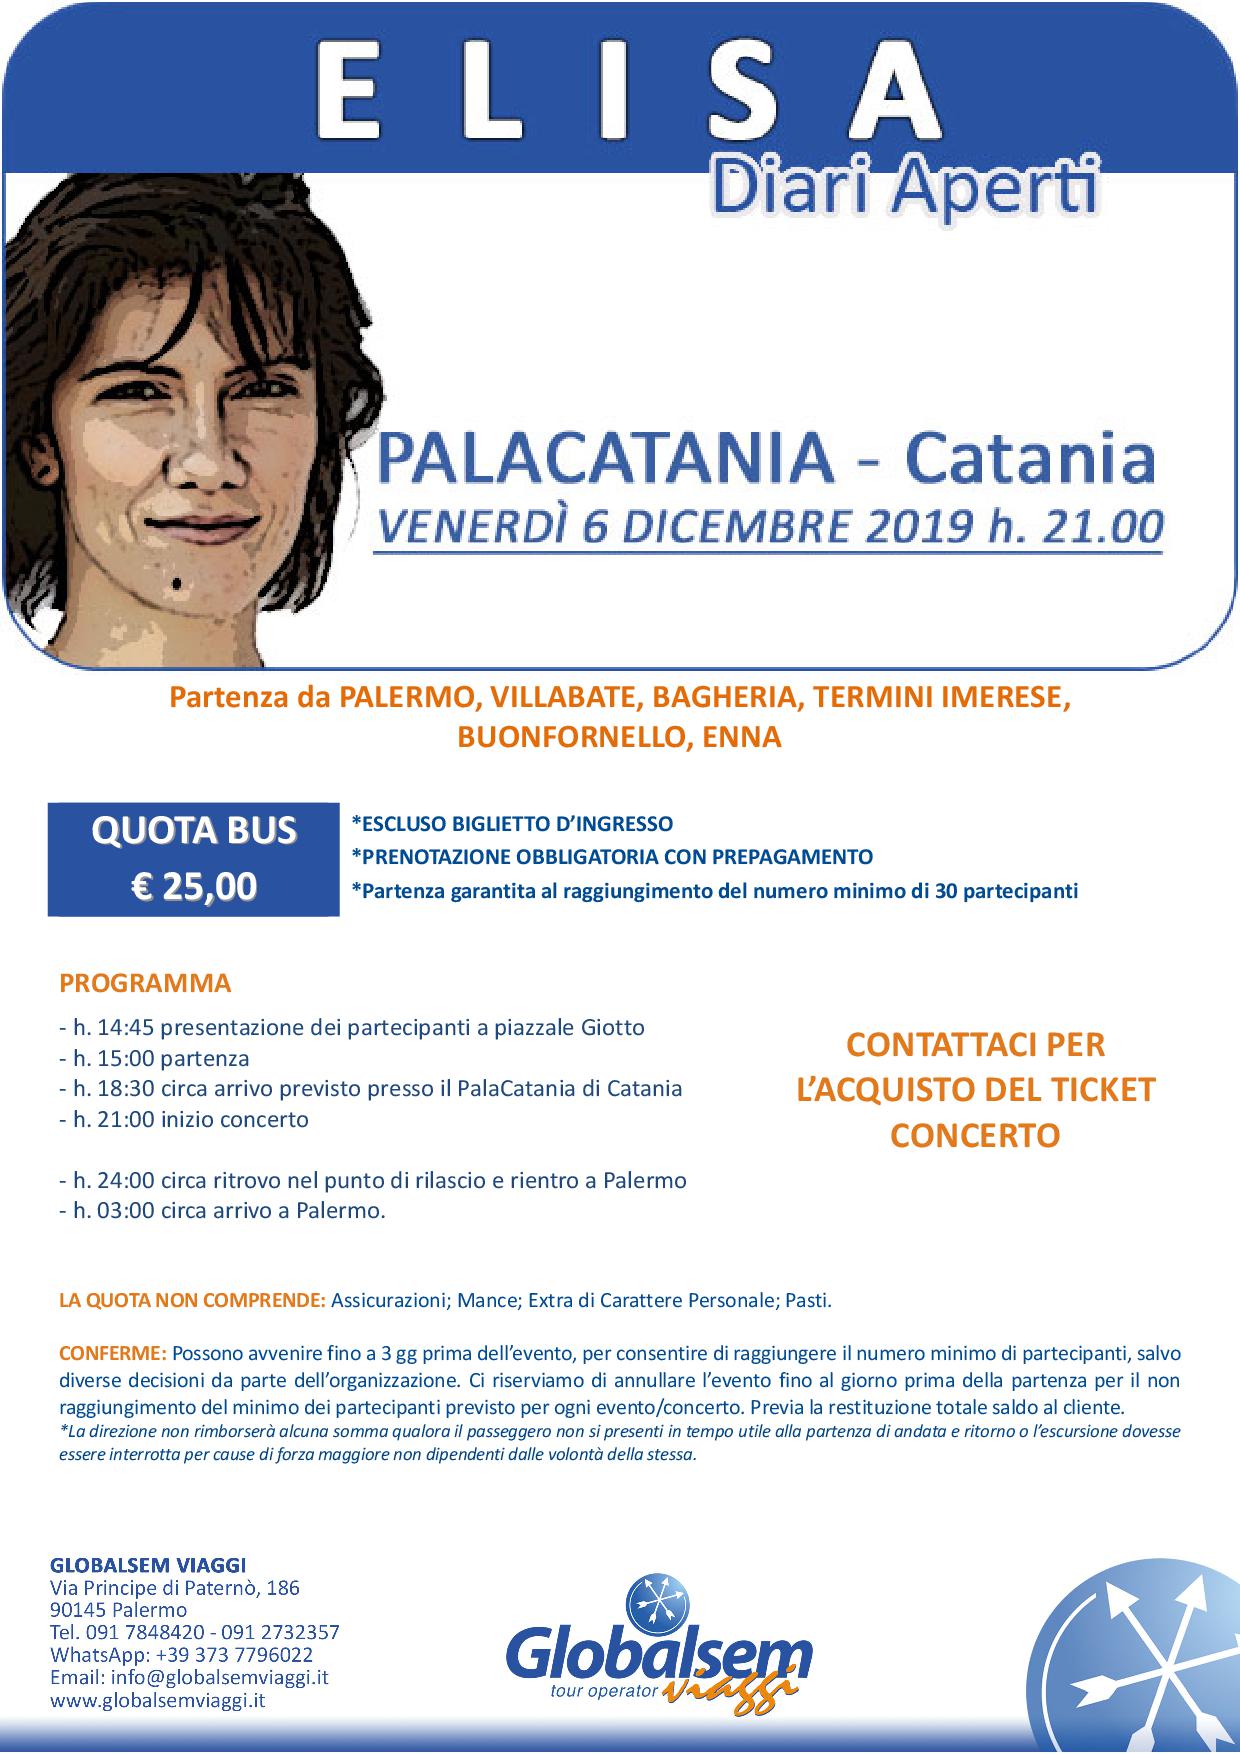 Elisa in concerto a Catania, partenza da Palermo in bus 6 dicembre 2019